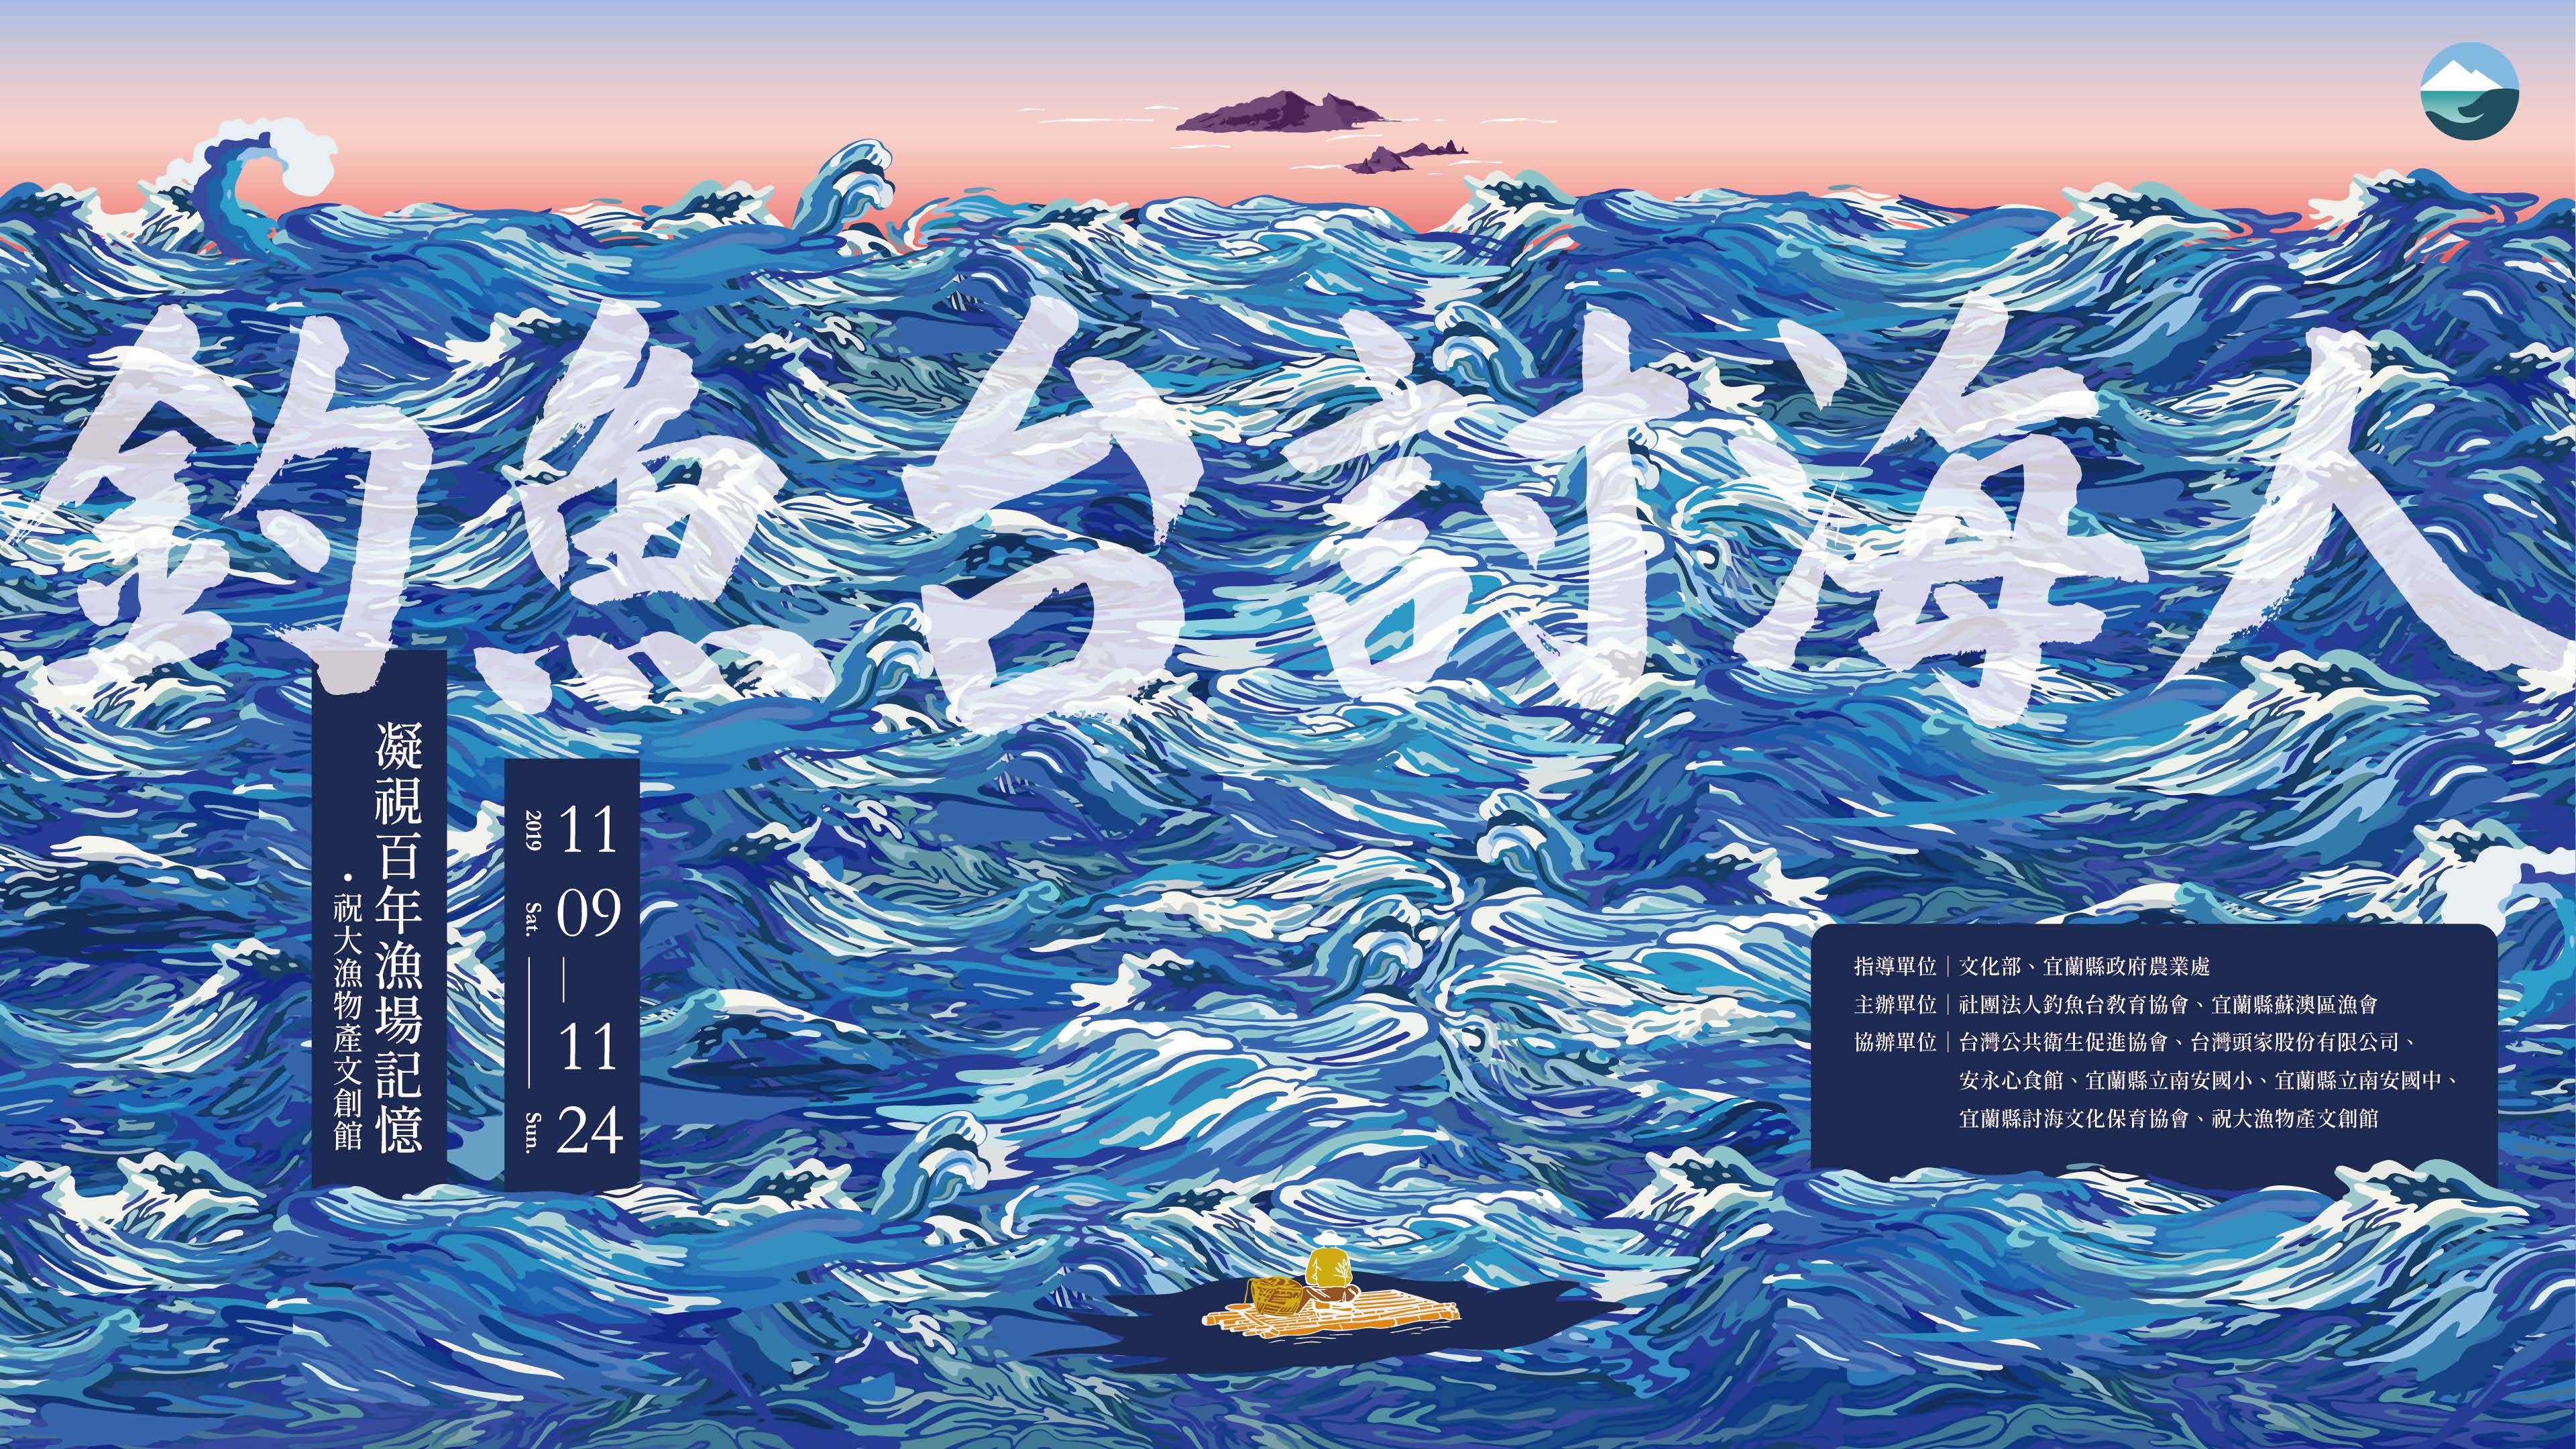 《釣魚台討海人-凝視百年漁場記憶》展